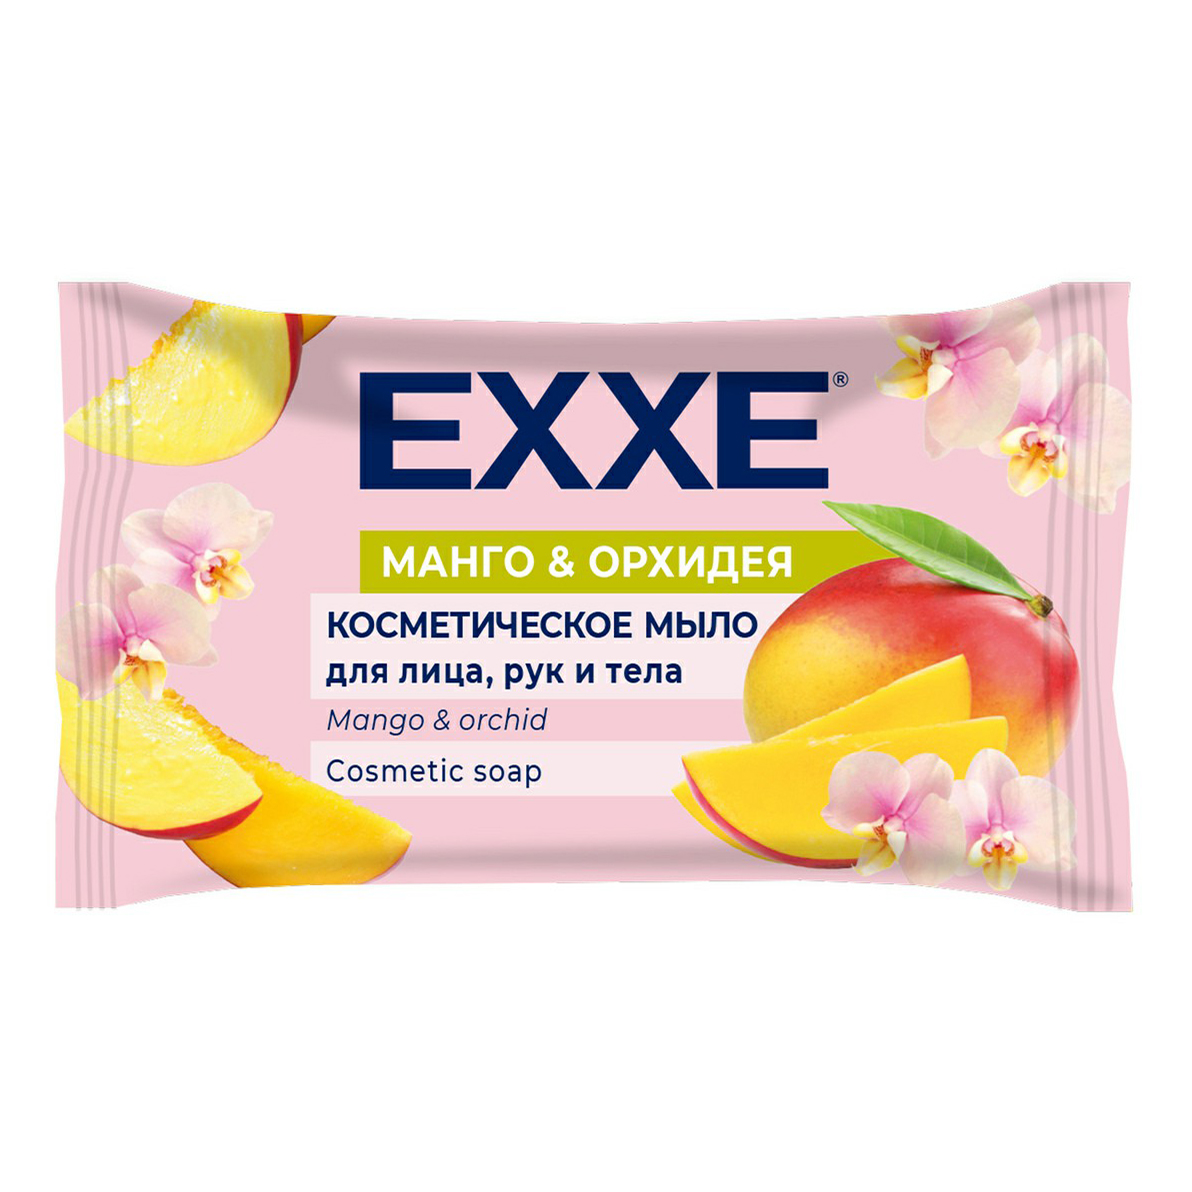 Туалетное мыло Exxe косметическое Манго и орхидея 75 г queen fair спонж для нанесения косметики манго